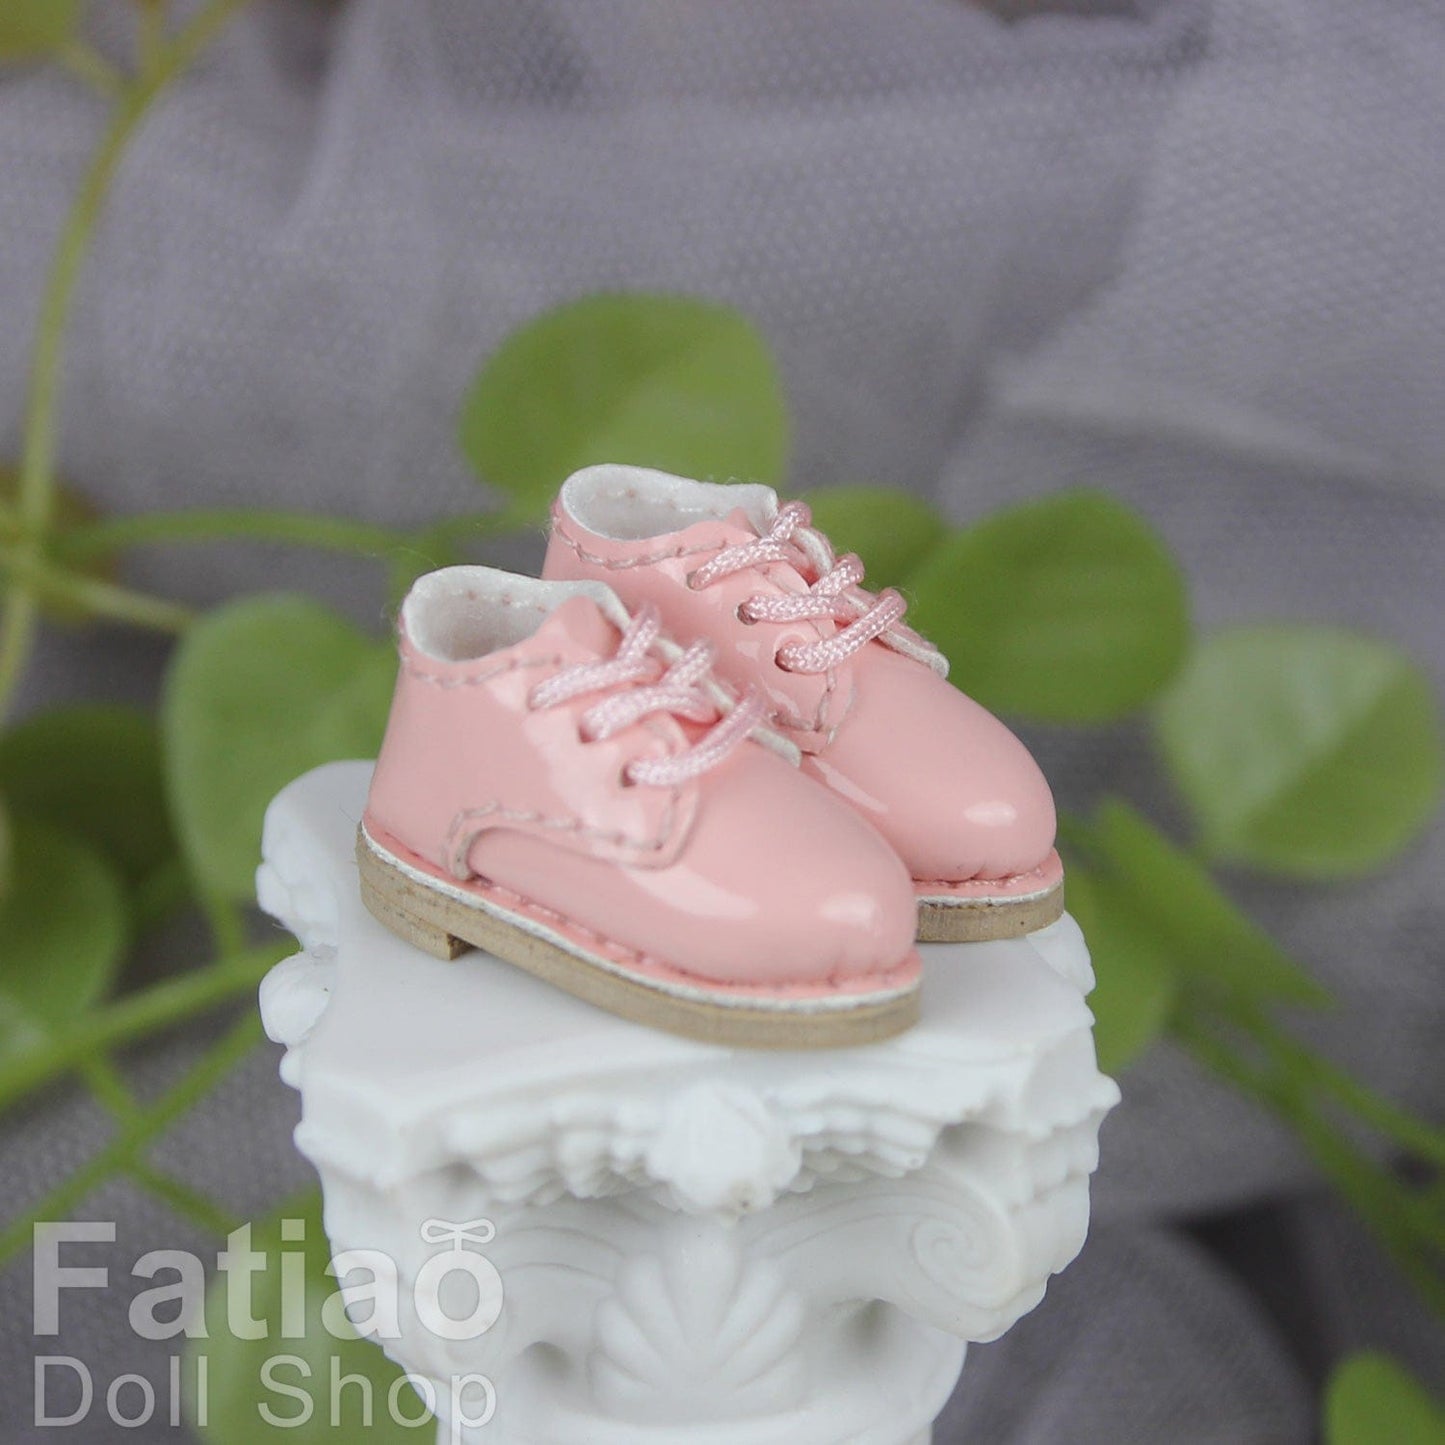 【Fatiao Doll Shop】西裝皮鞋 / OB11 OBITSU